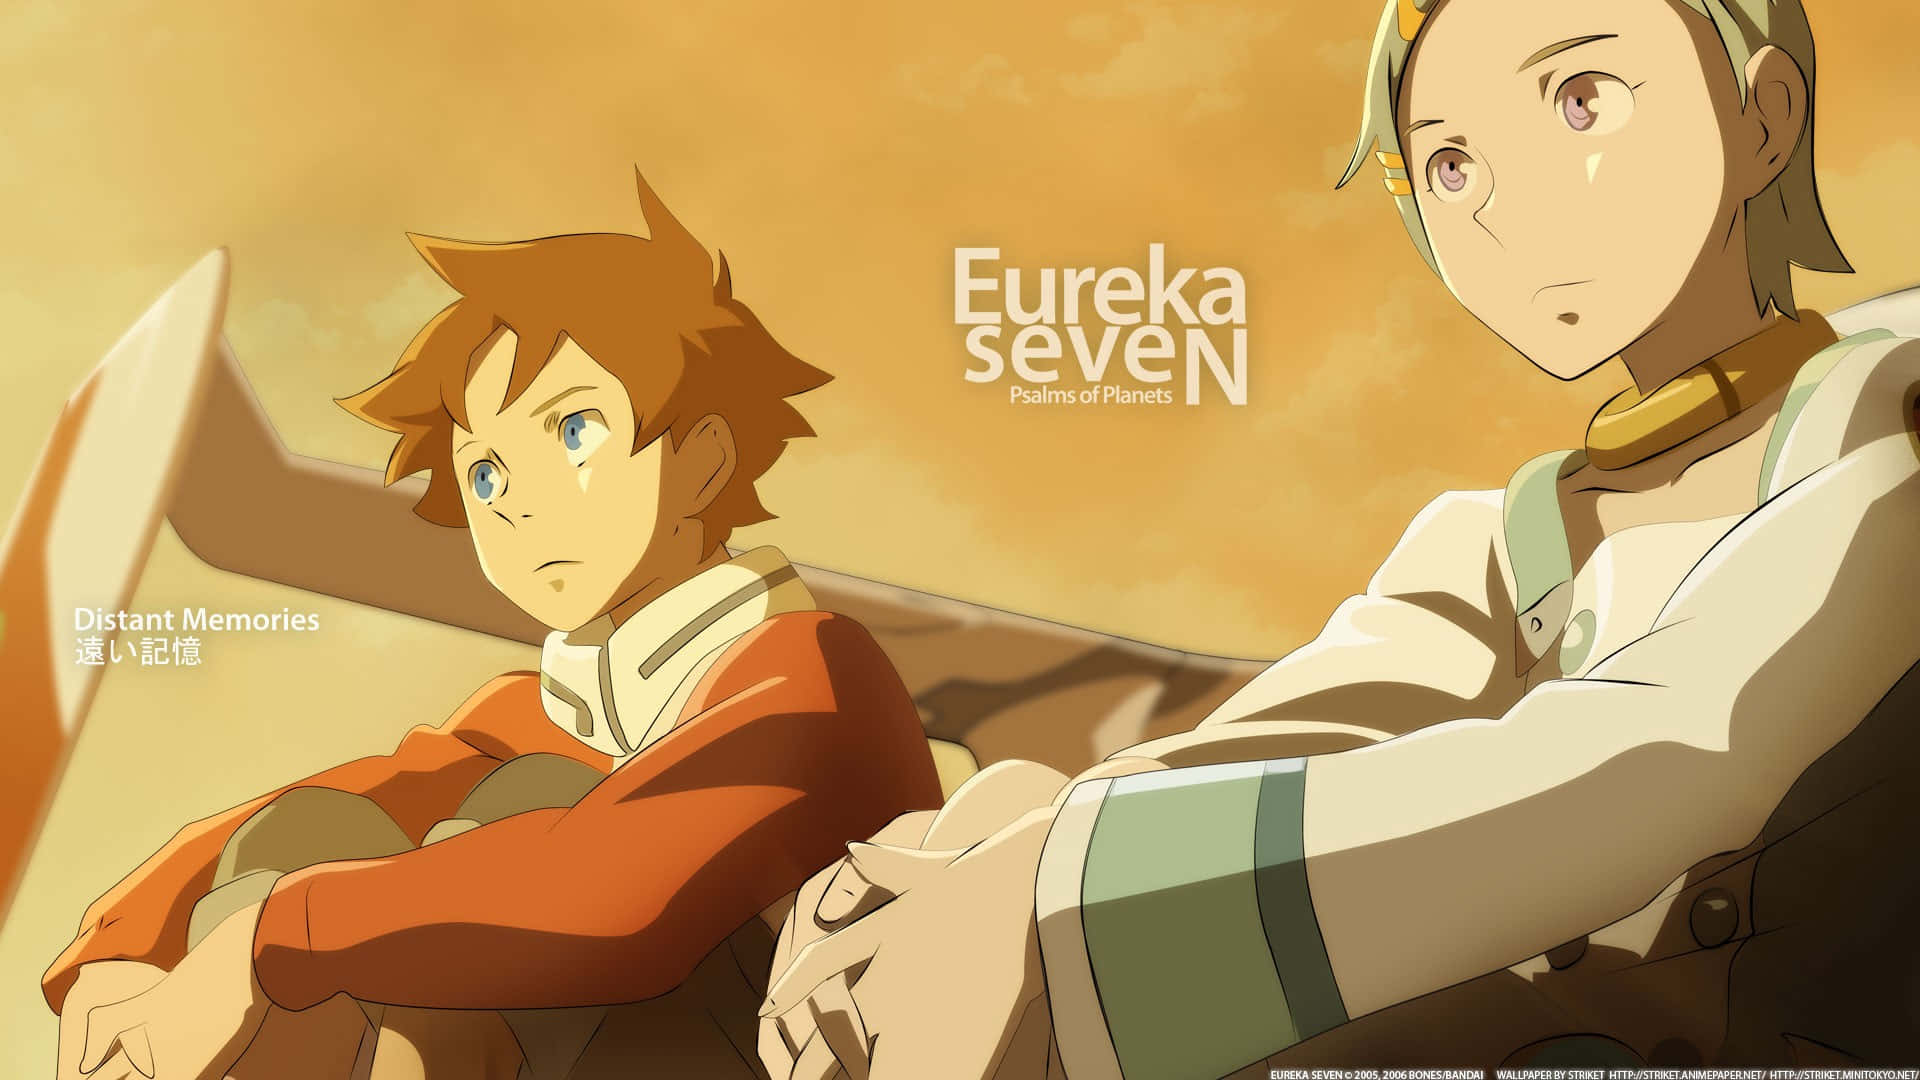 Detteer Eureka Og Renton Fra Den Populære Anime-serie Eureka Seven!